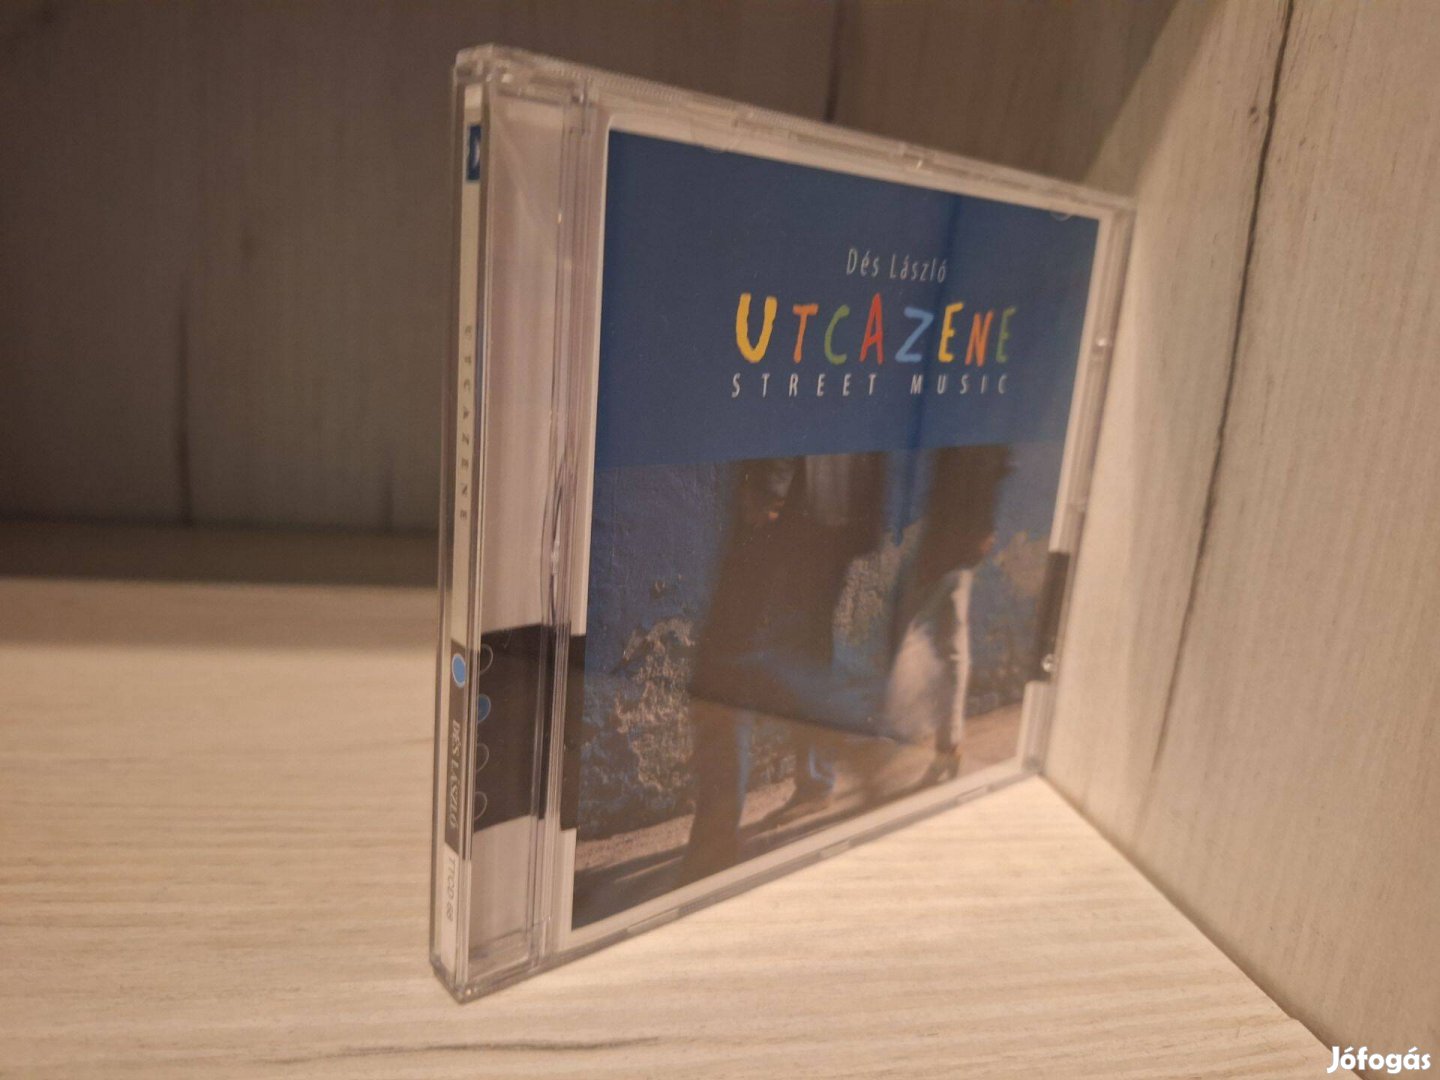 Dés László - Utcazene (Street Music) CD